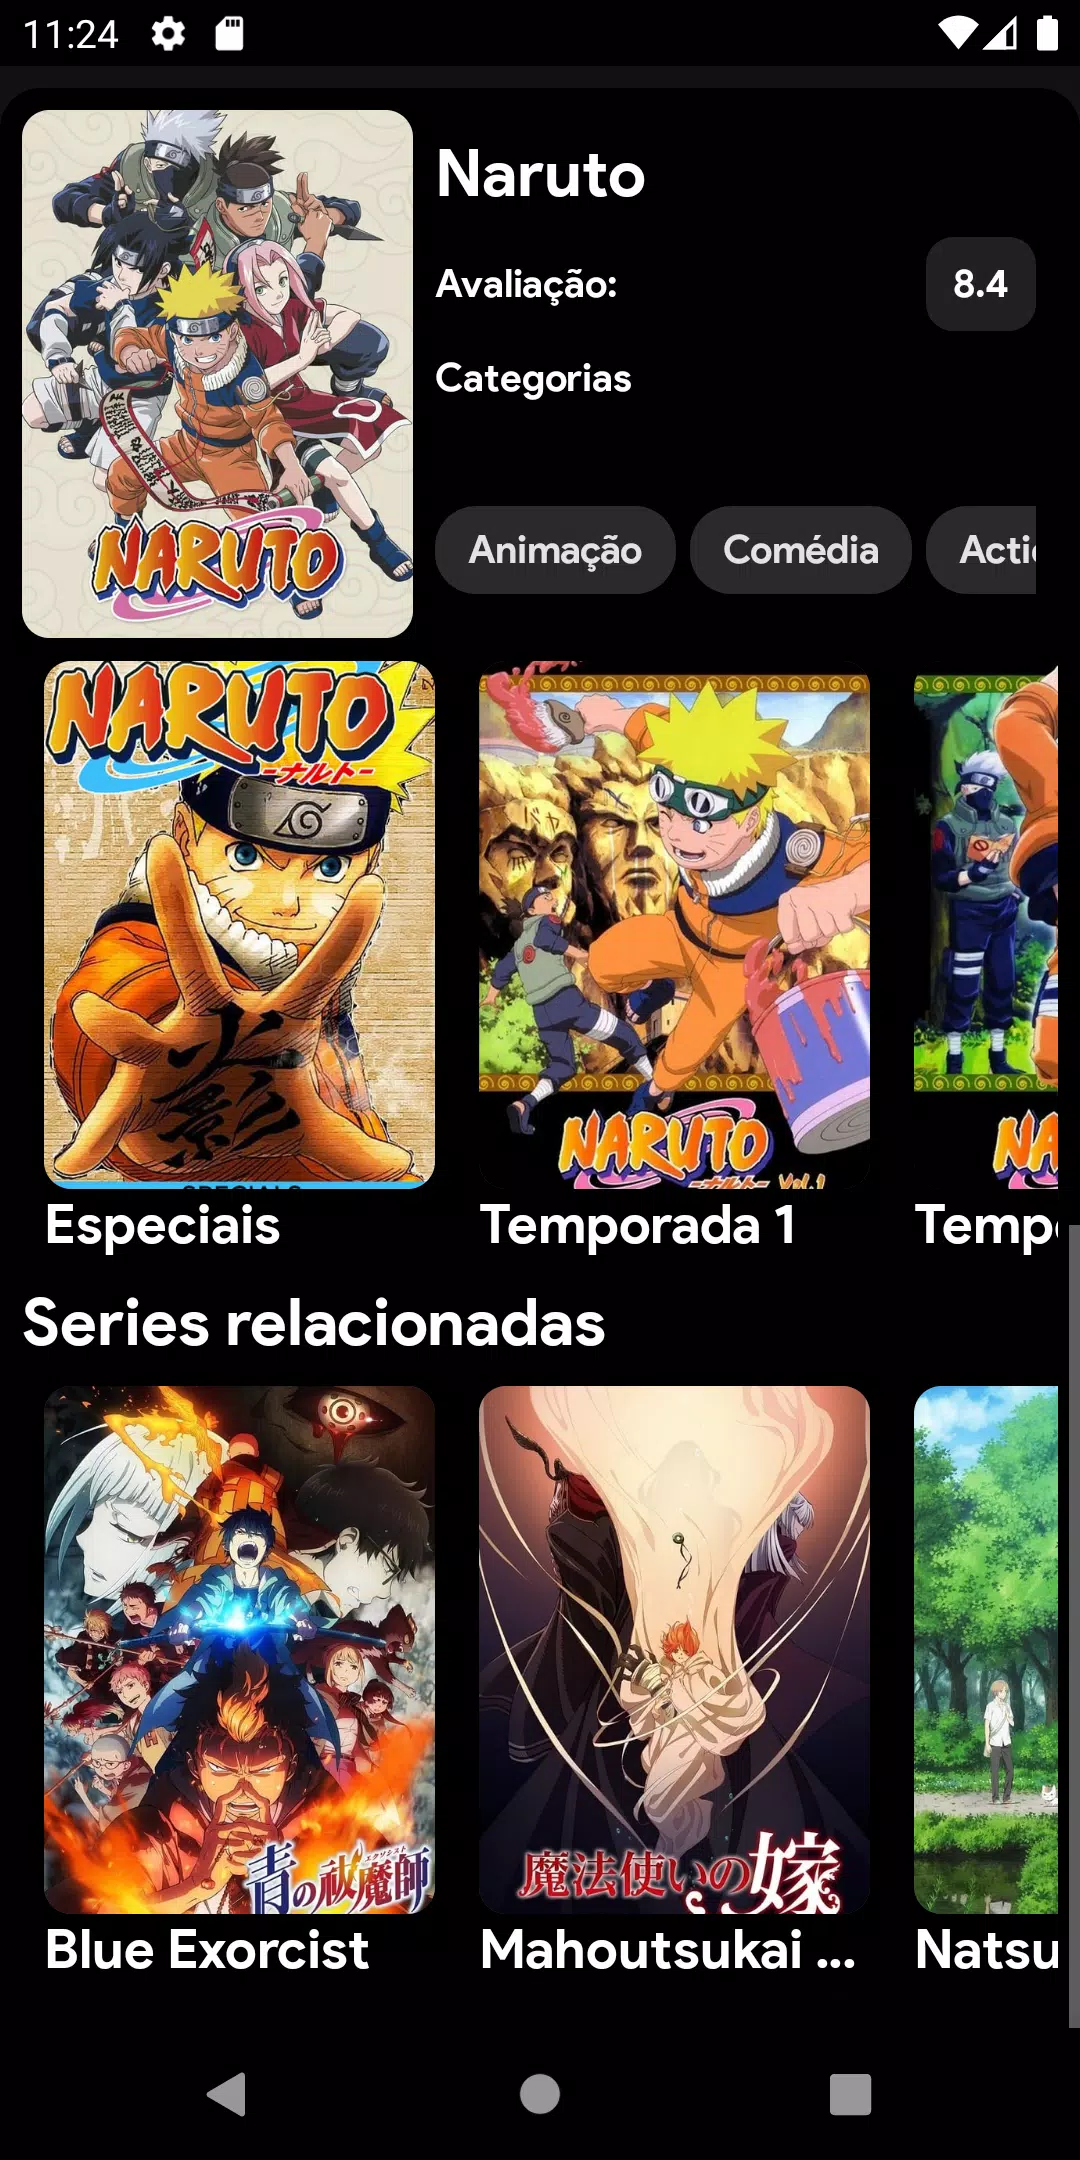 Stream Play Séries Filmes E Animes Premium Apk 6.0 1 by TuvesAbura